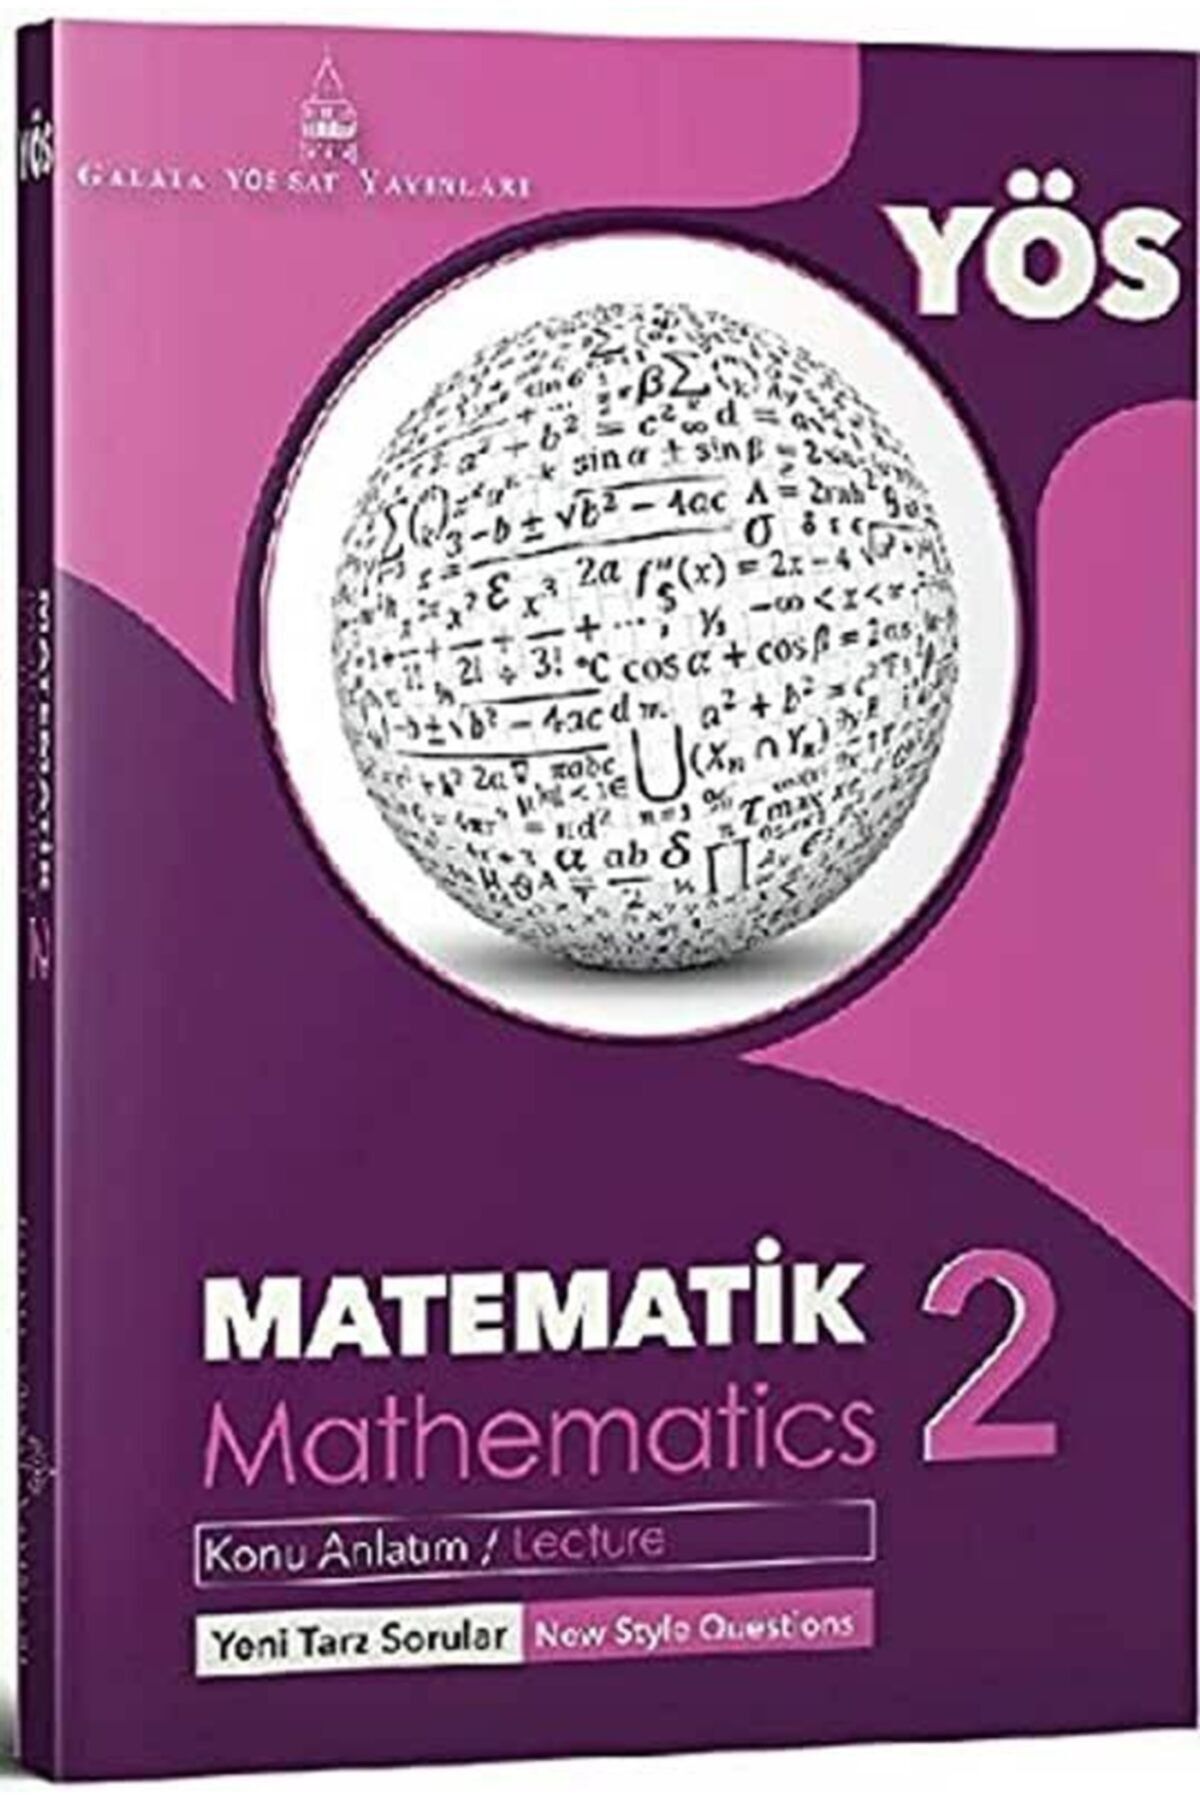 Genel Markalar Galata Yös-sat Matematik 2 Konu Anlatım